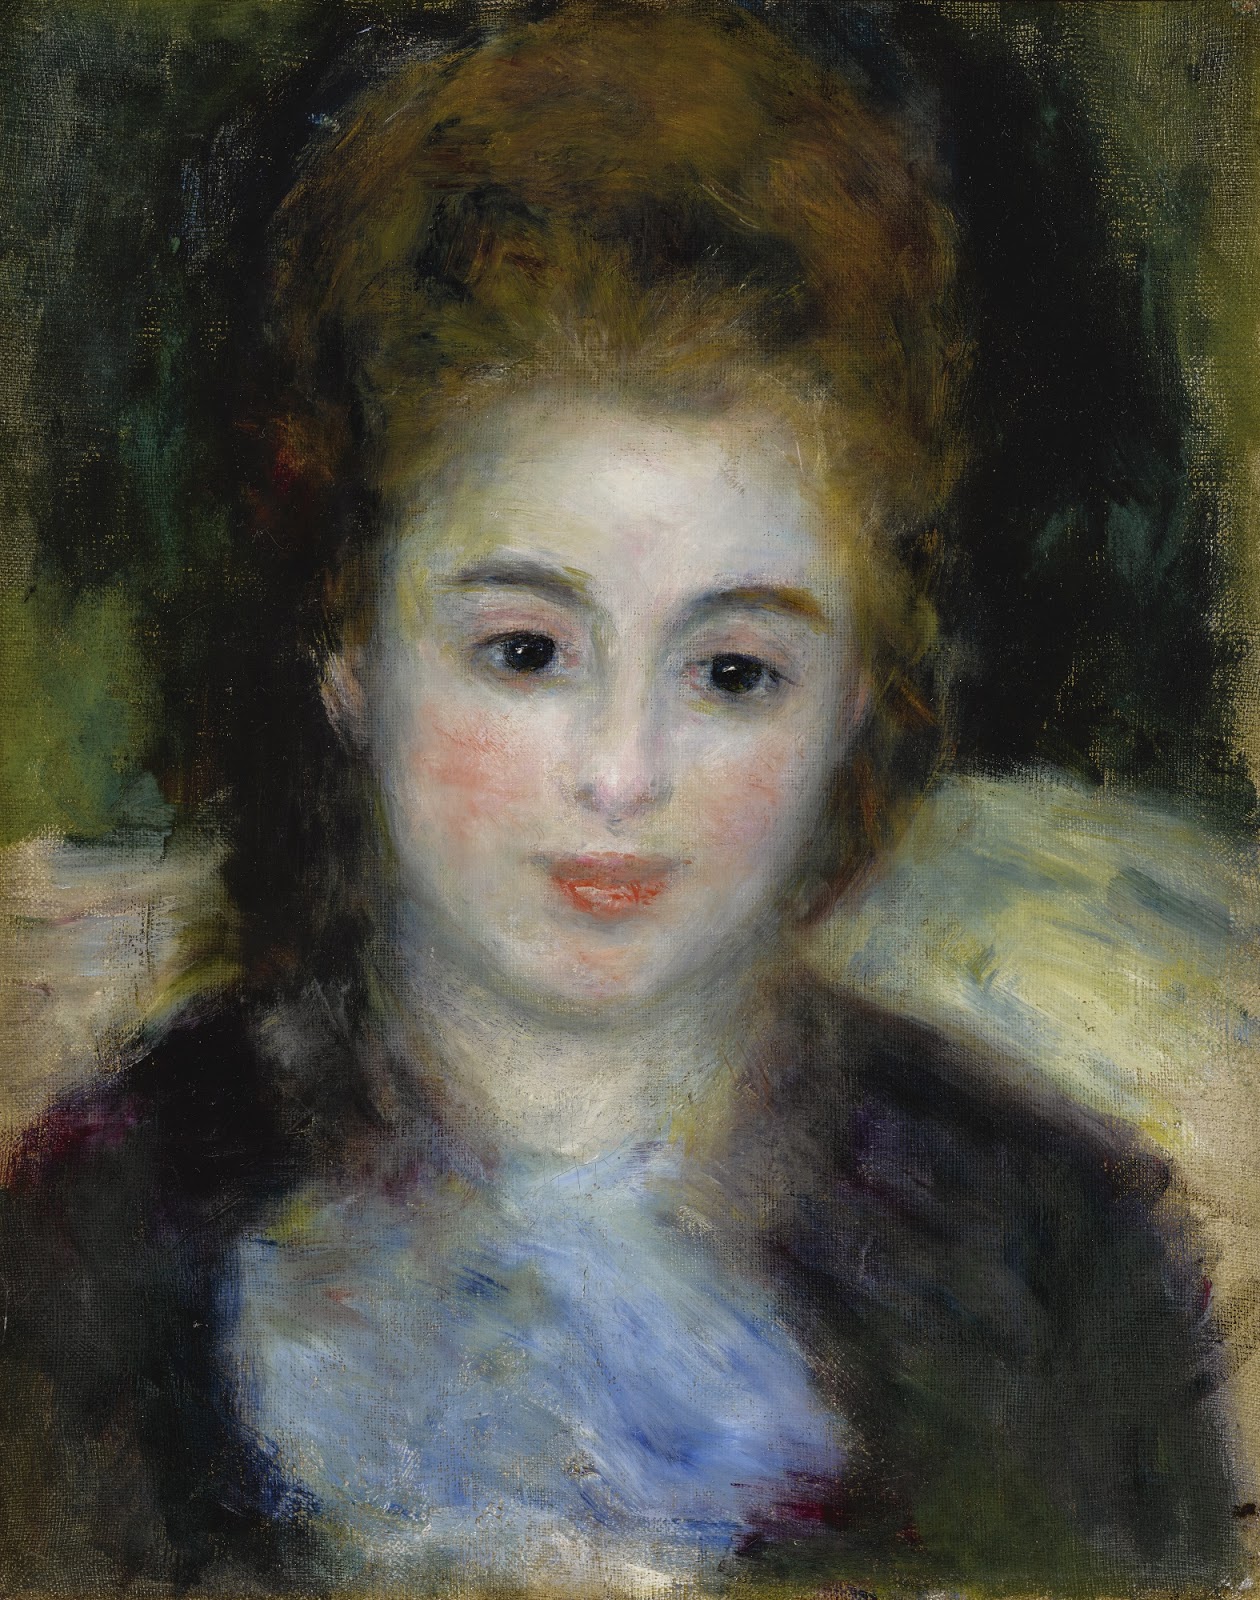 Pierre+Auguste+Renoir-1841-1-19 (835).jpg